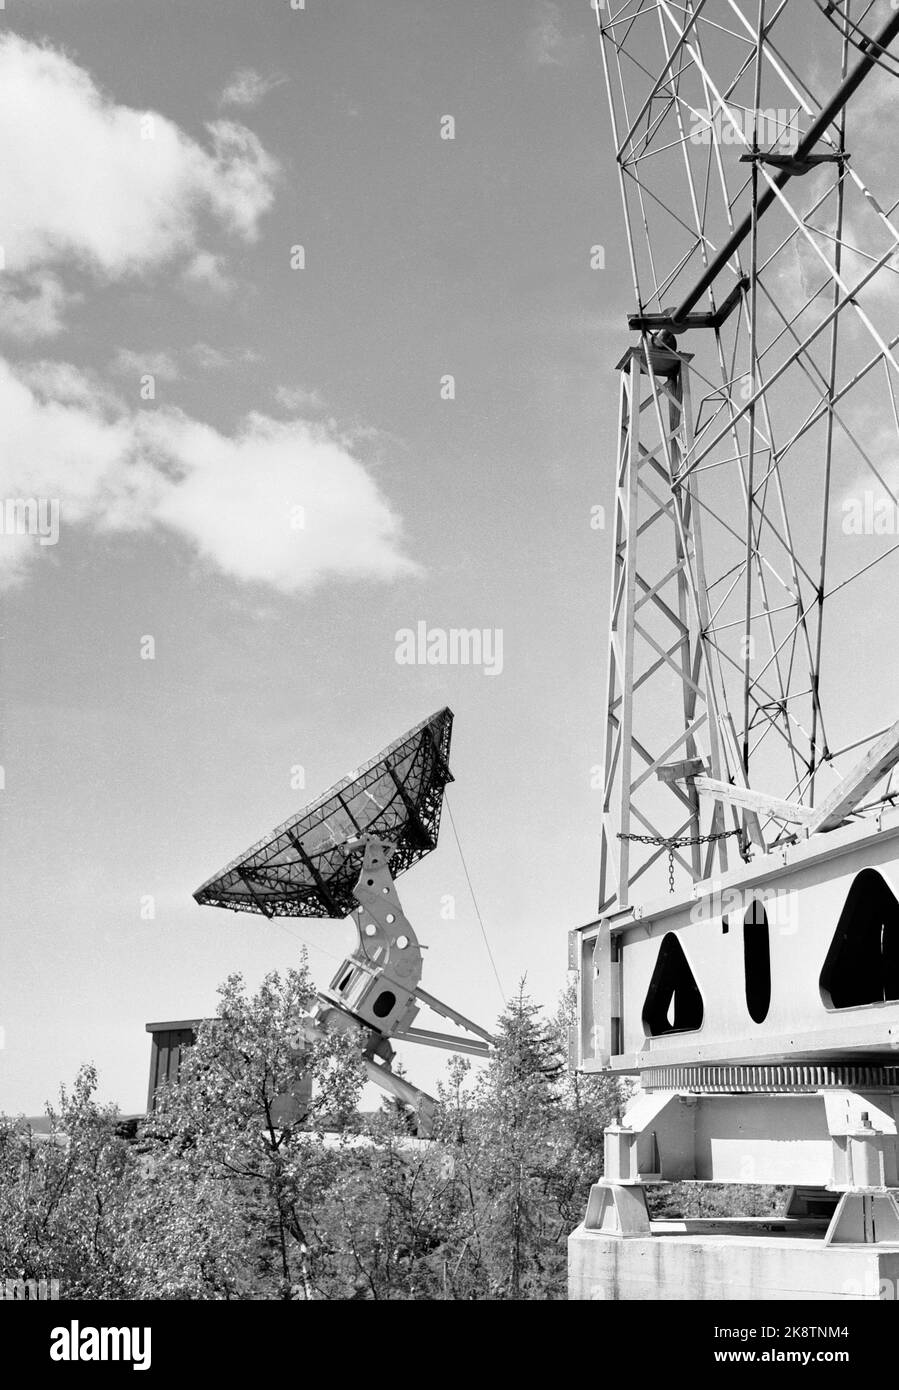 Haerstua 19540531 l'observatoire solaire de Haerstua est mis en service. Ici, certaines antennes, entre autres. a. Une antenne de matelas (TH) et un réflecteur parabolique. Photo: NTB / NTB Banque D'Images